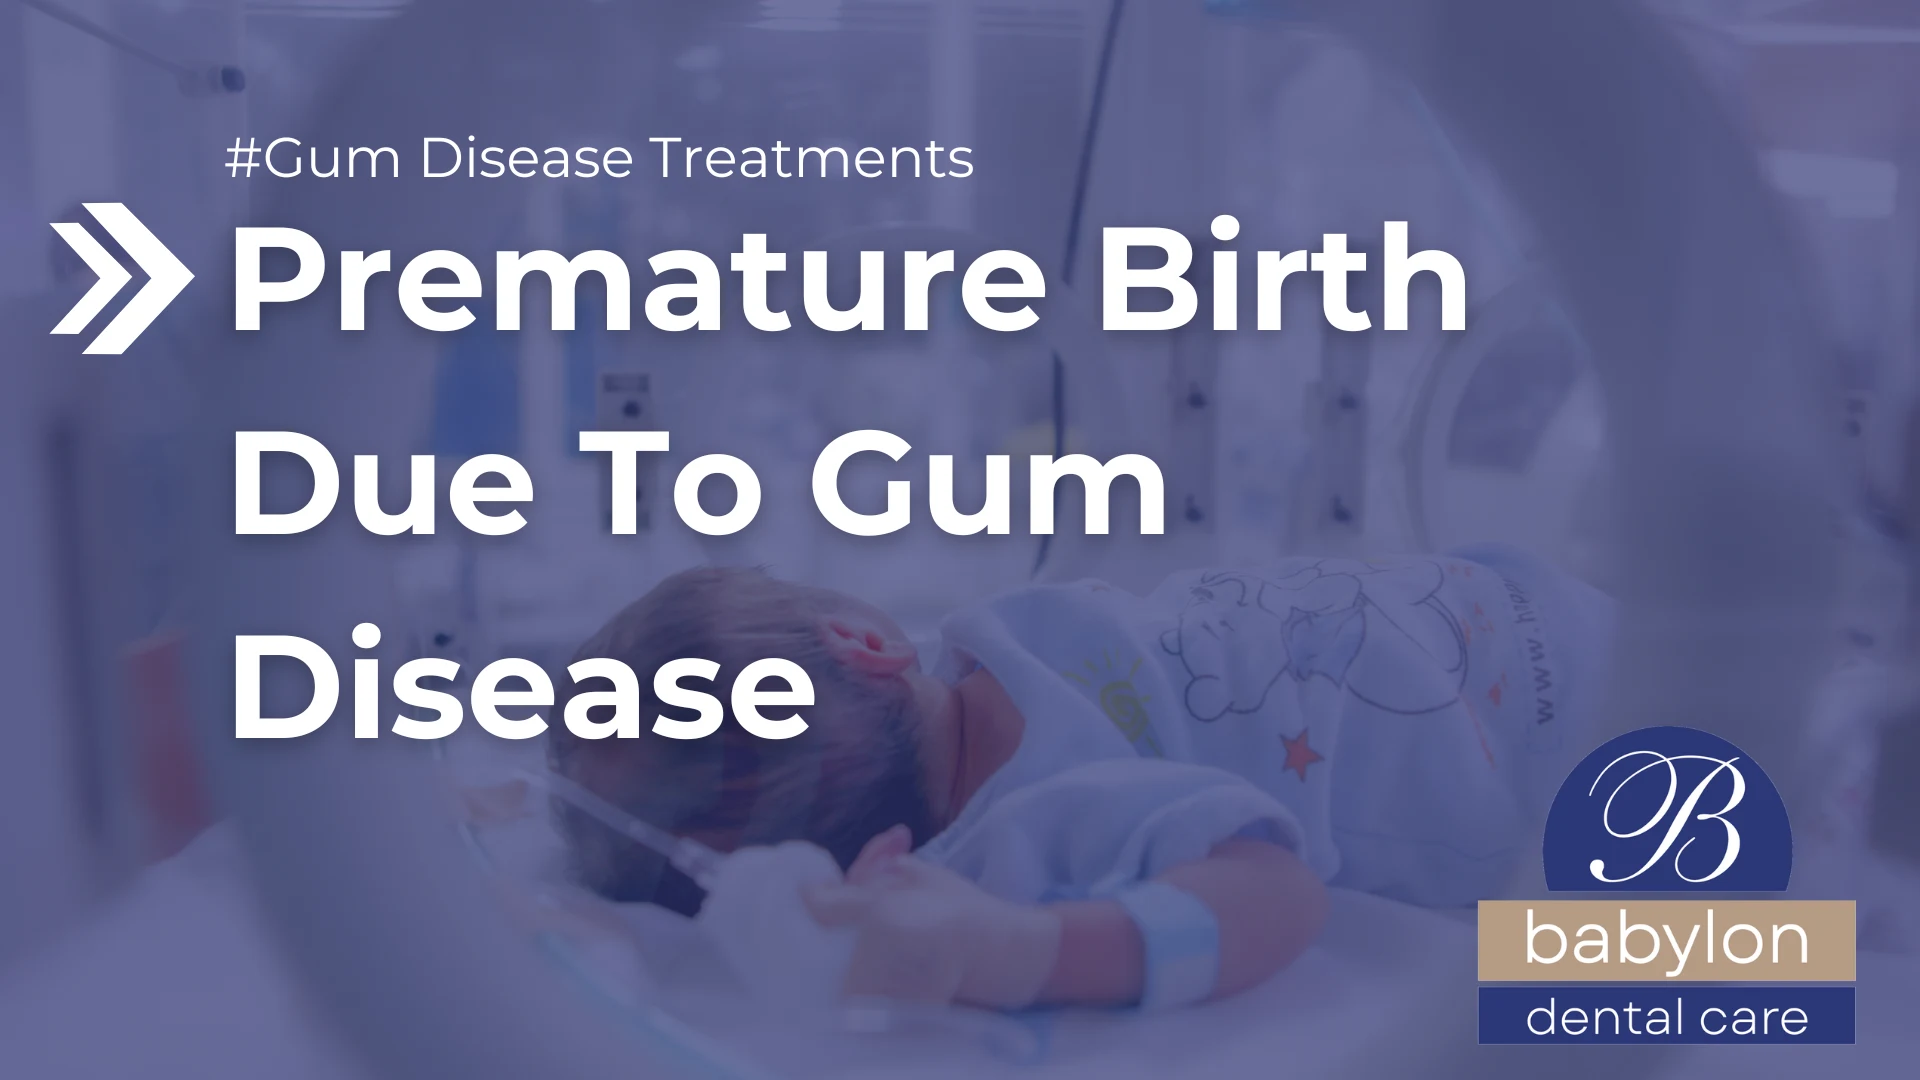 Premature Birth Due To Gum Disease Image - new logo